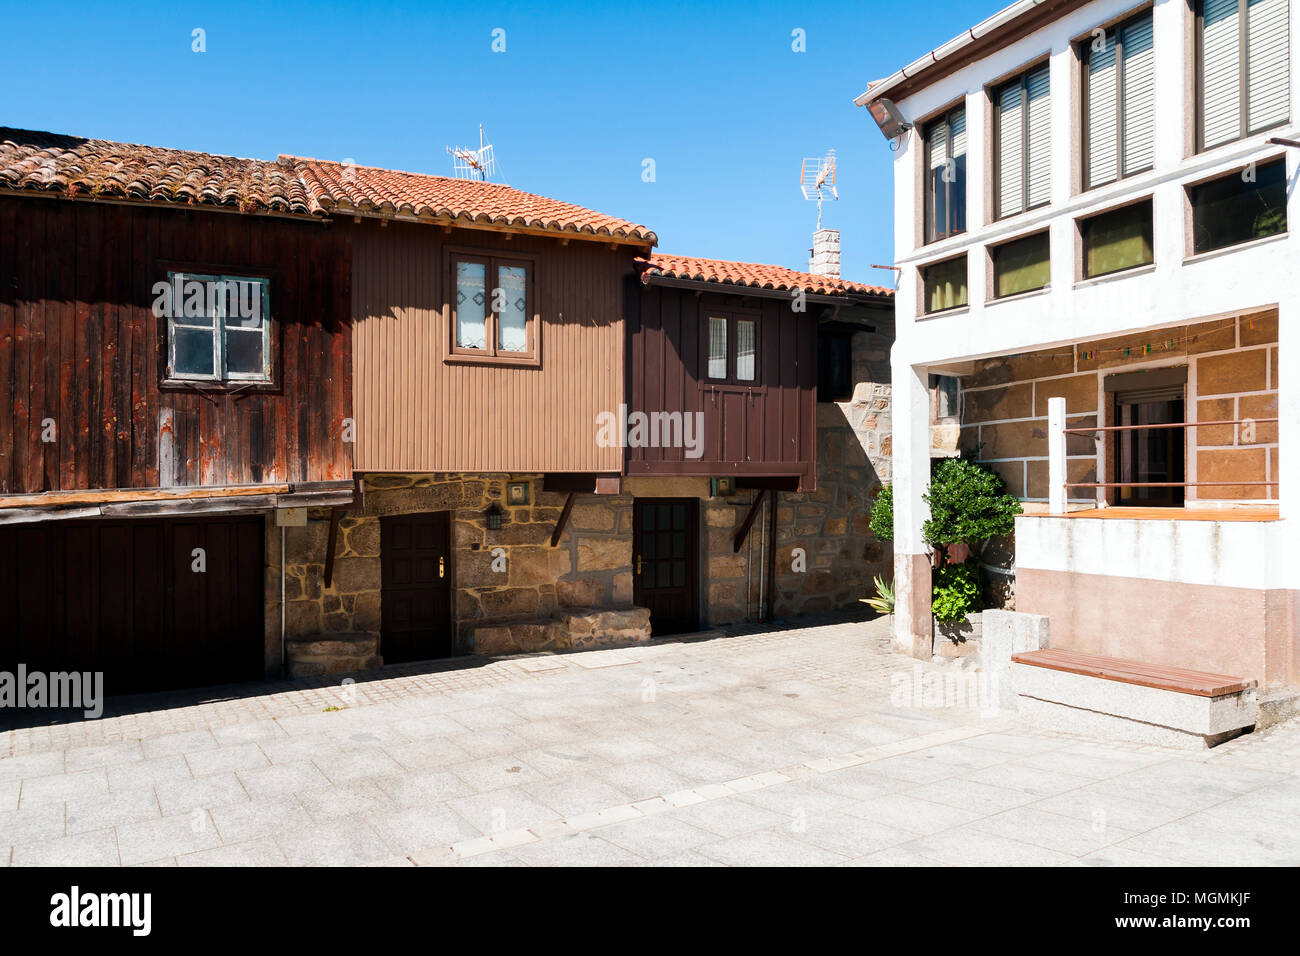 Arquitectura popular. Vilanova dos Infantes (Celanova). Ourense. Galicia. España Stock Photo